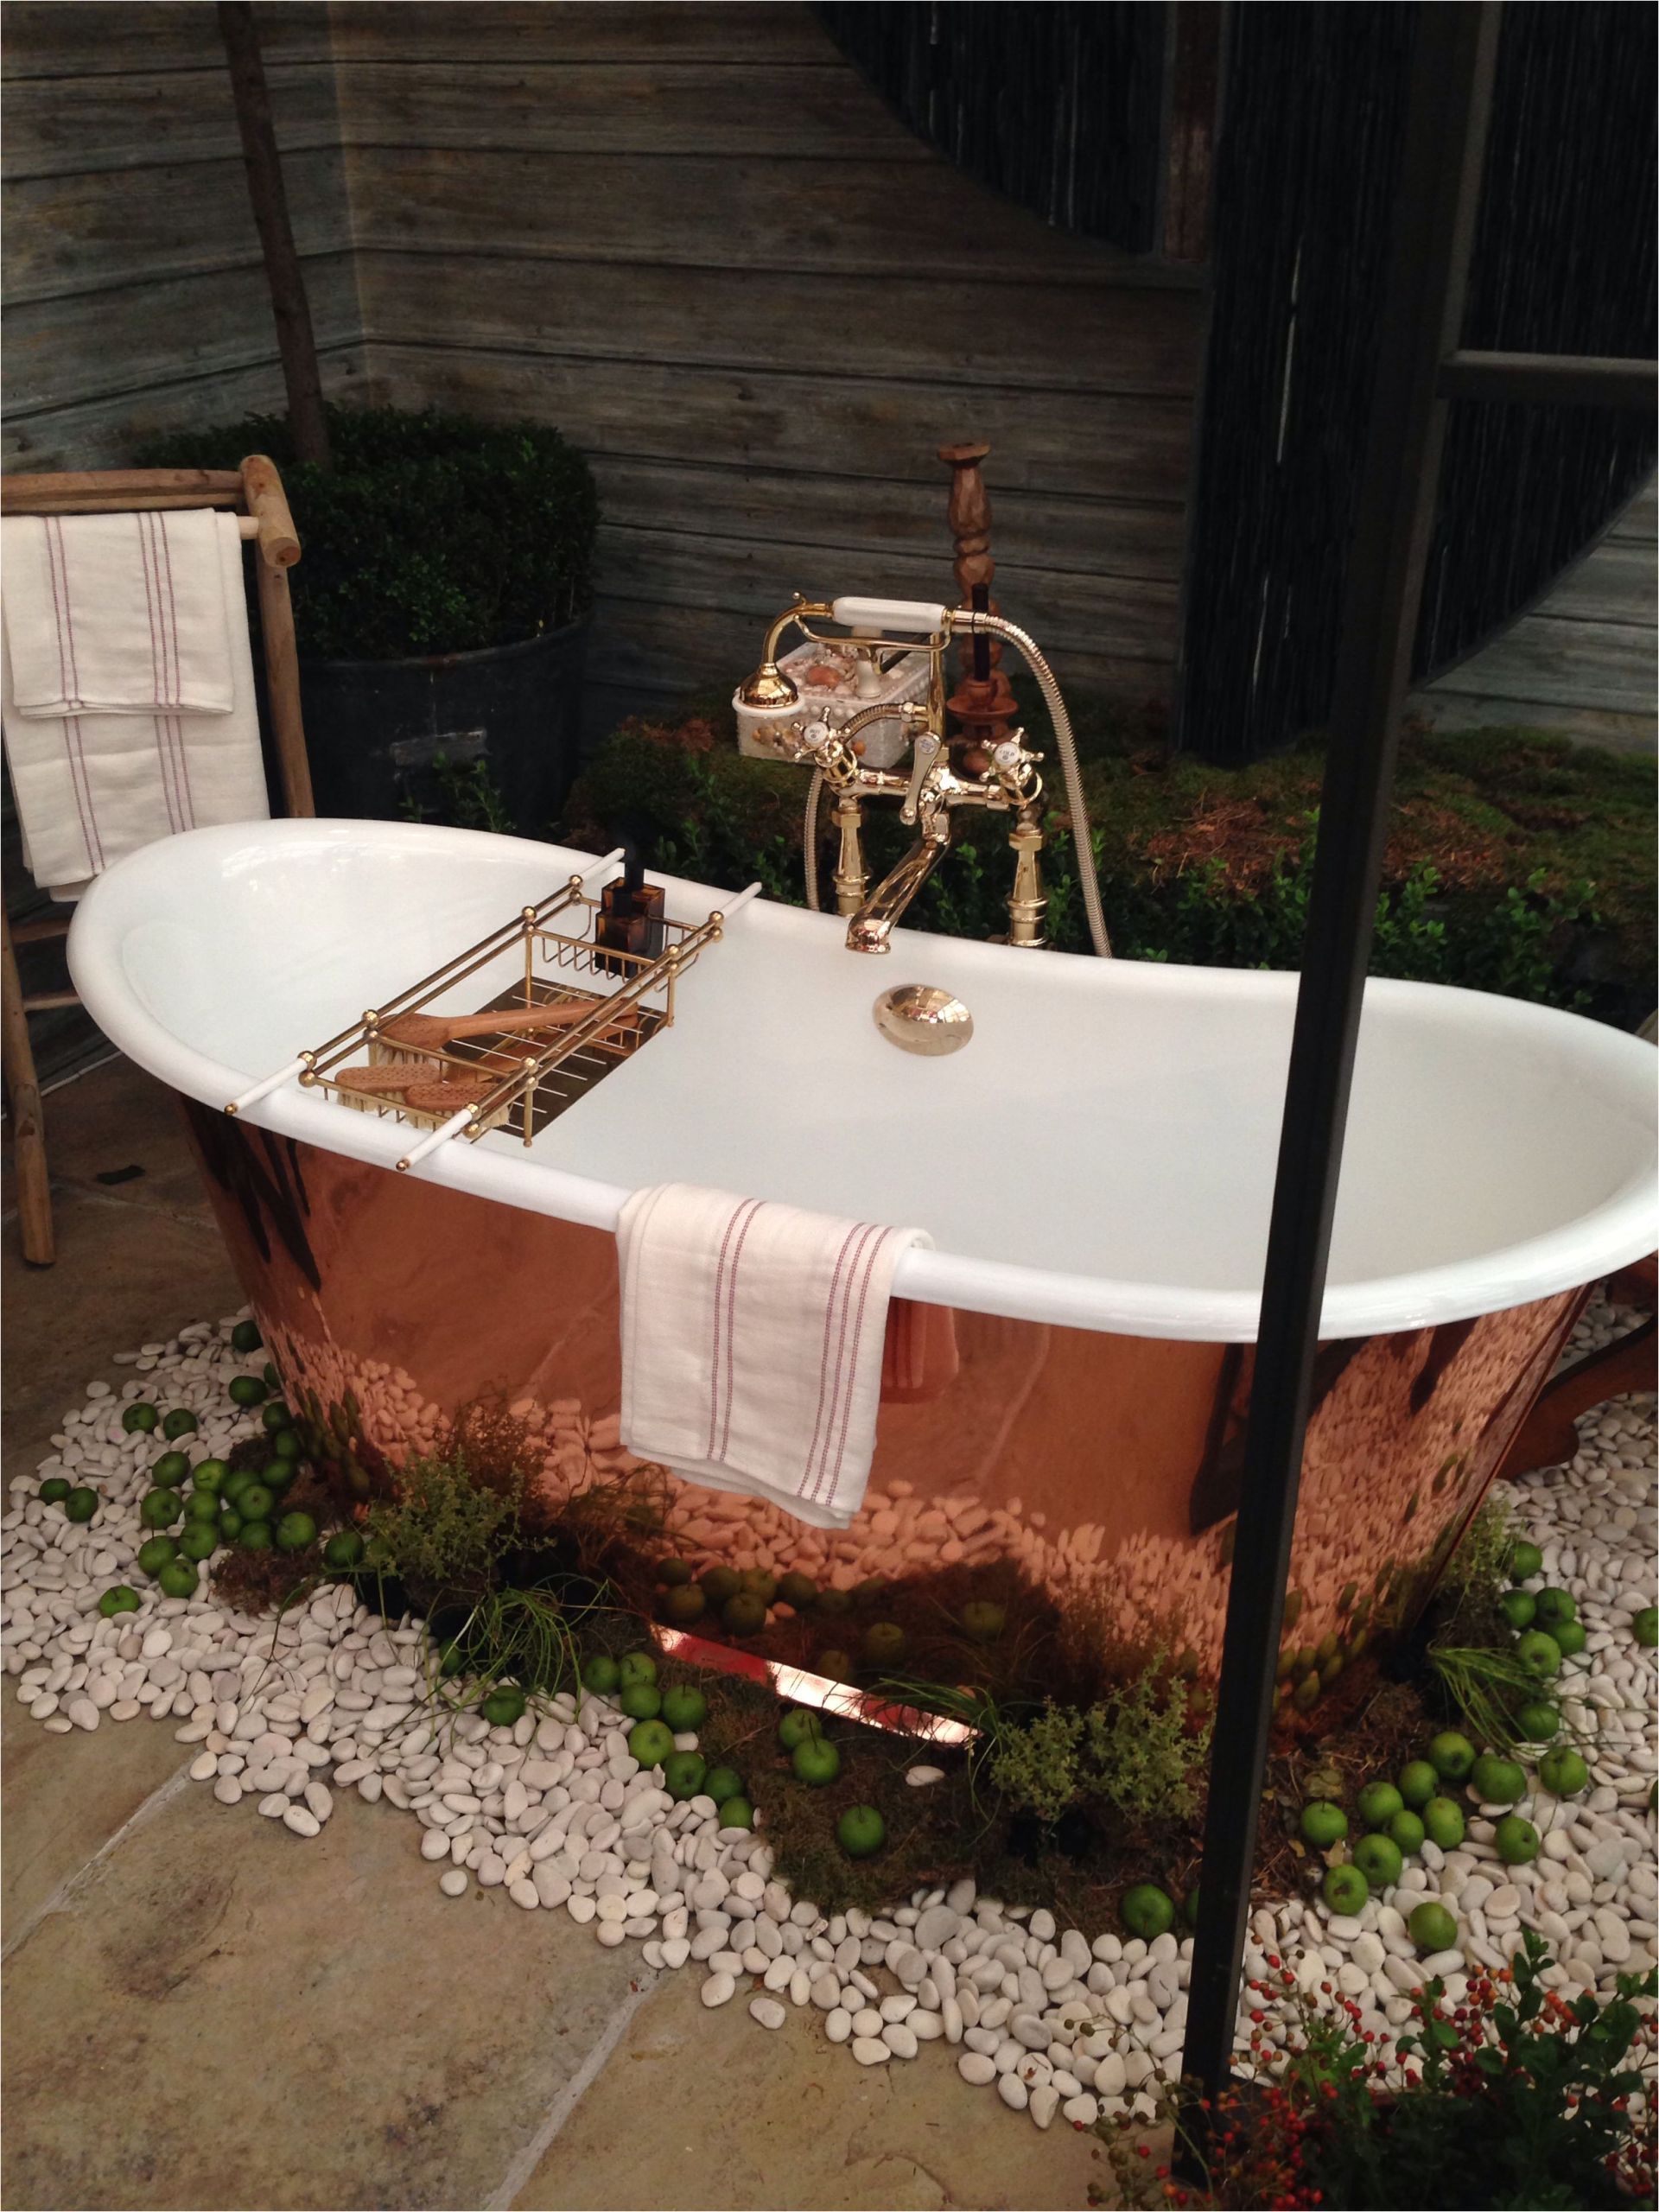 Outdoor Copper Bathtub Copper Tub Sits In An Outside Garden Bathroom so Pretty